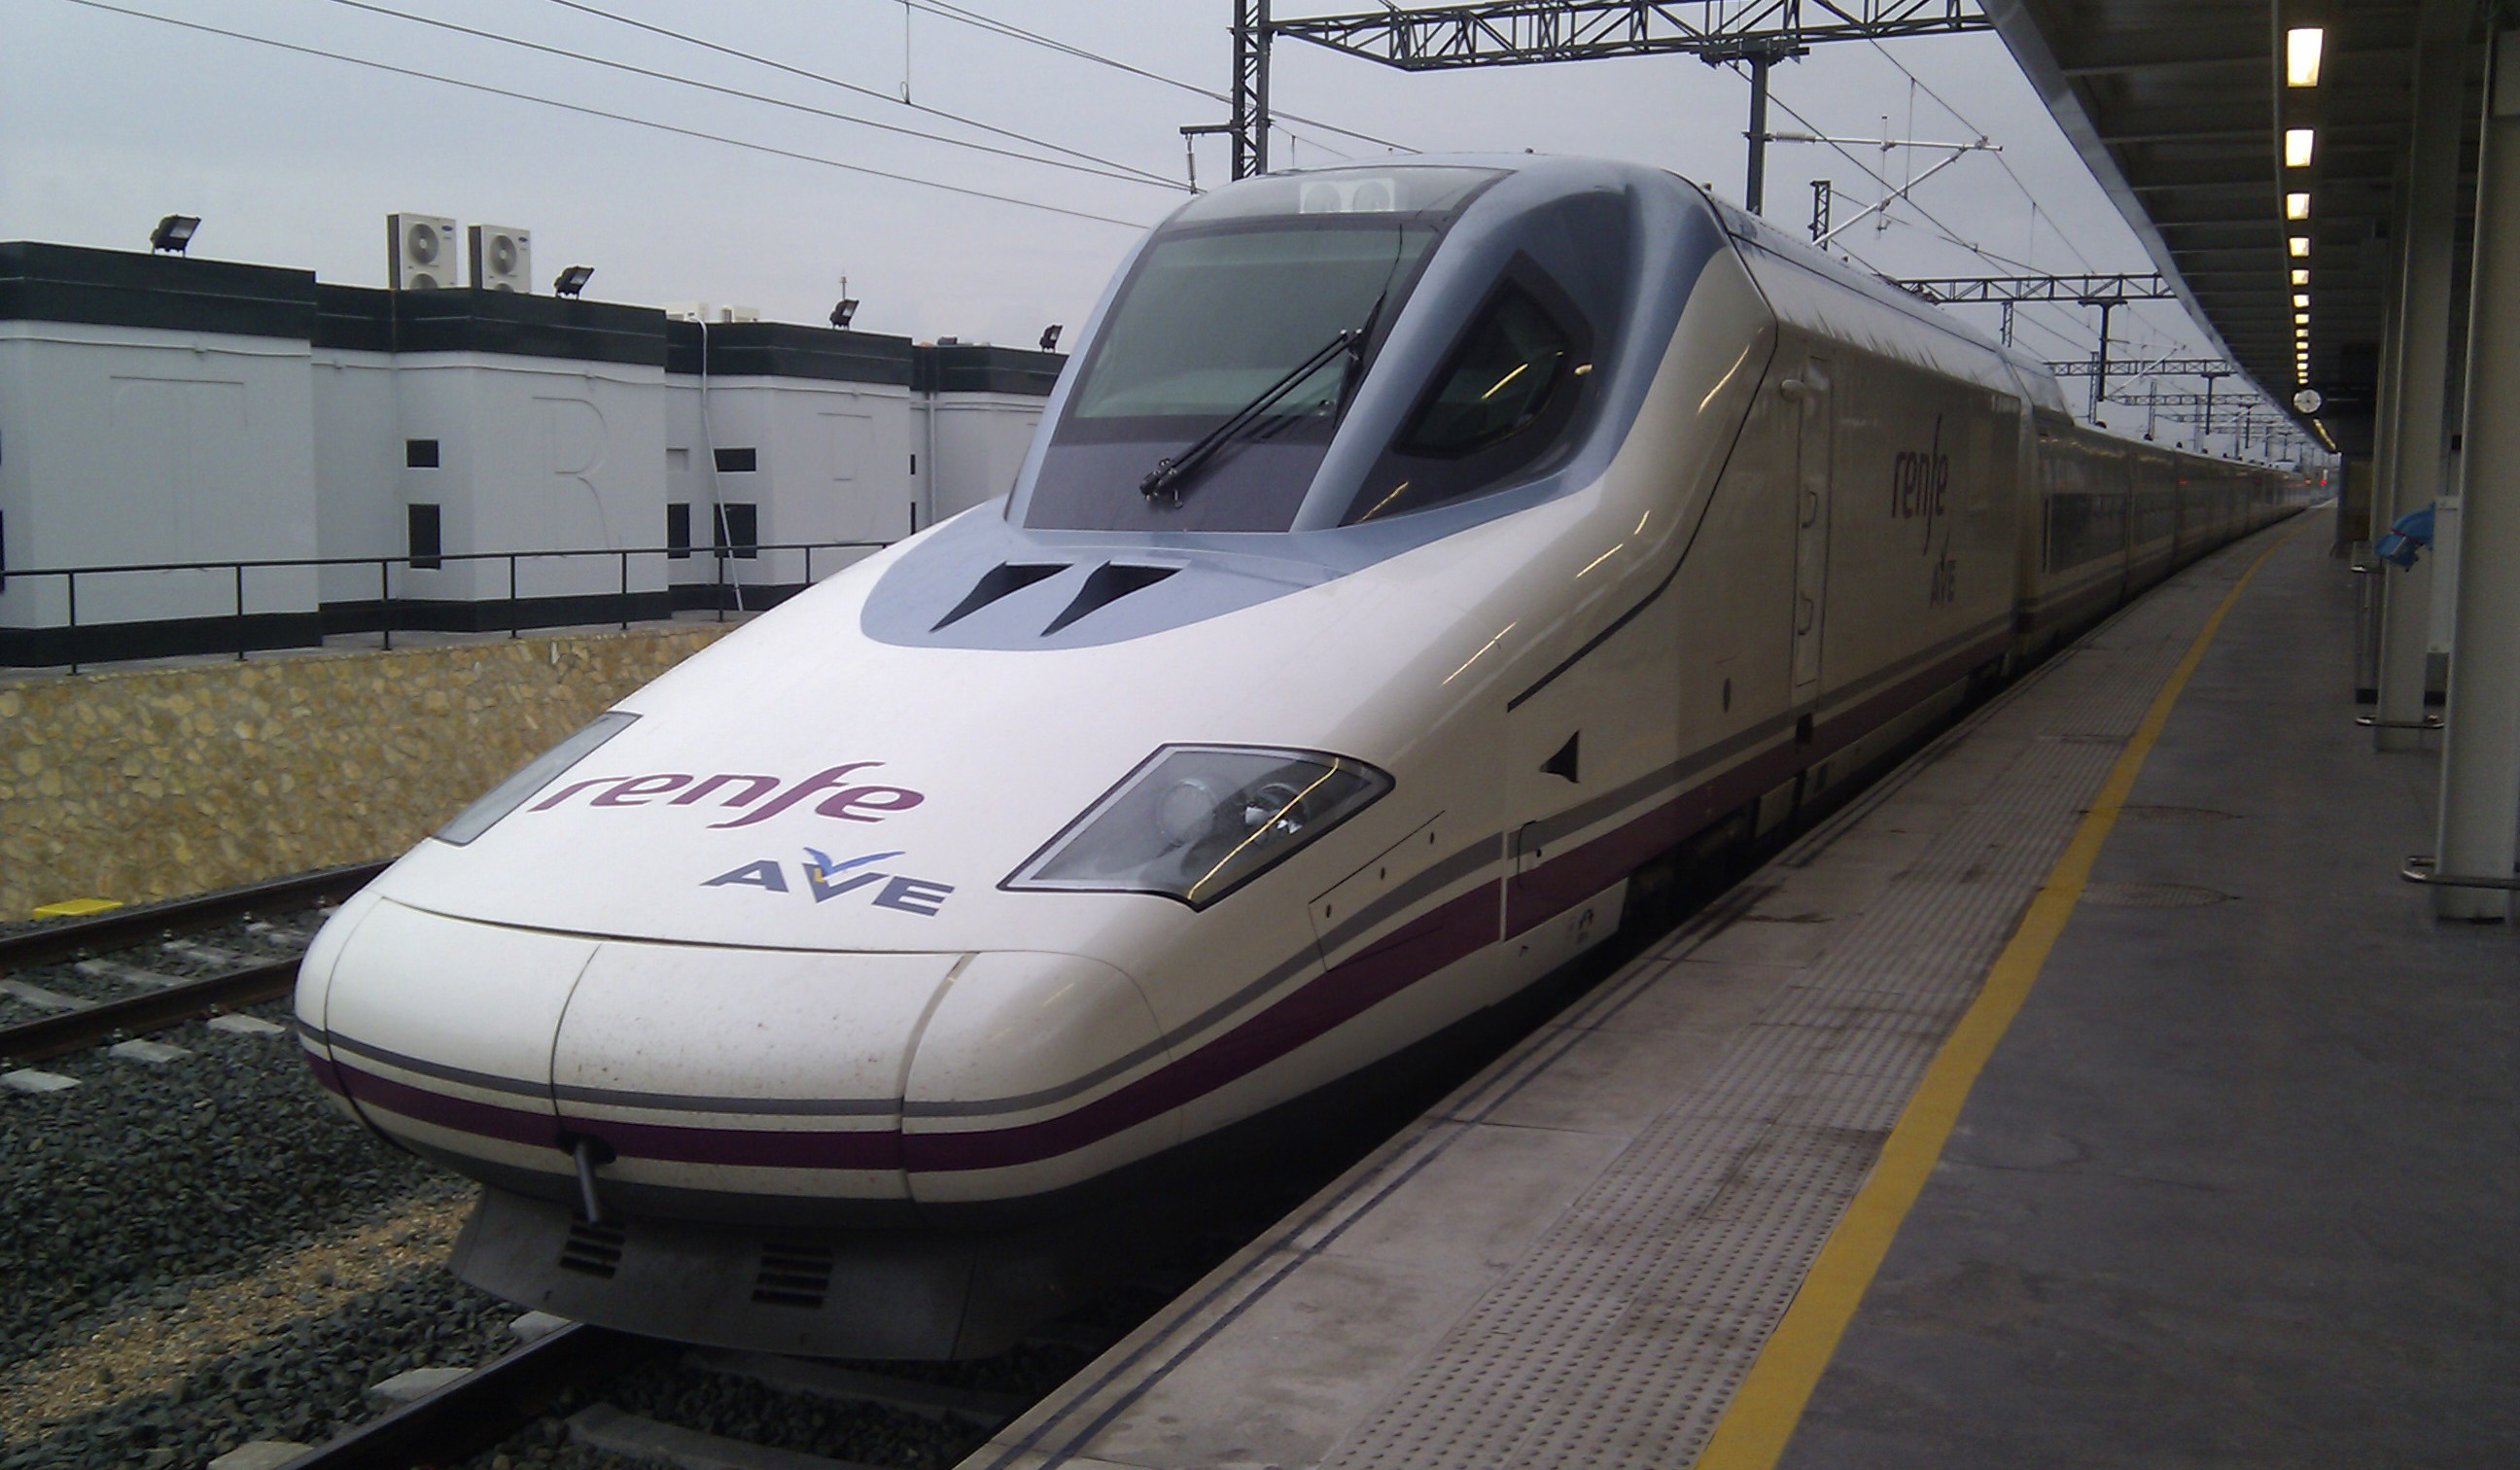 La Renfe, sncf version espagnole est membre du consortium chargé de mettre en place la ligne TGV Médine-La Mecque.